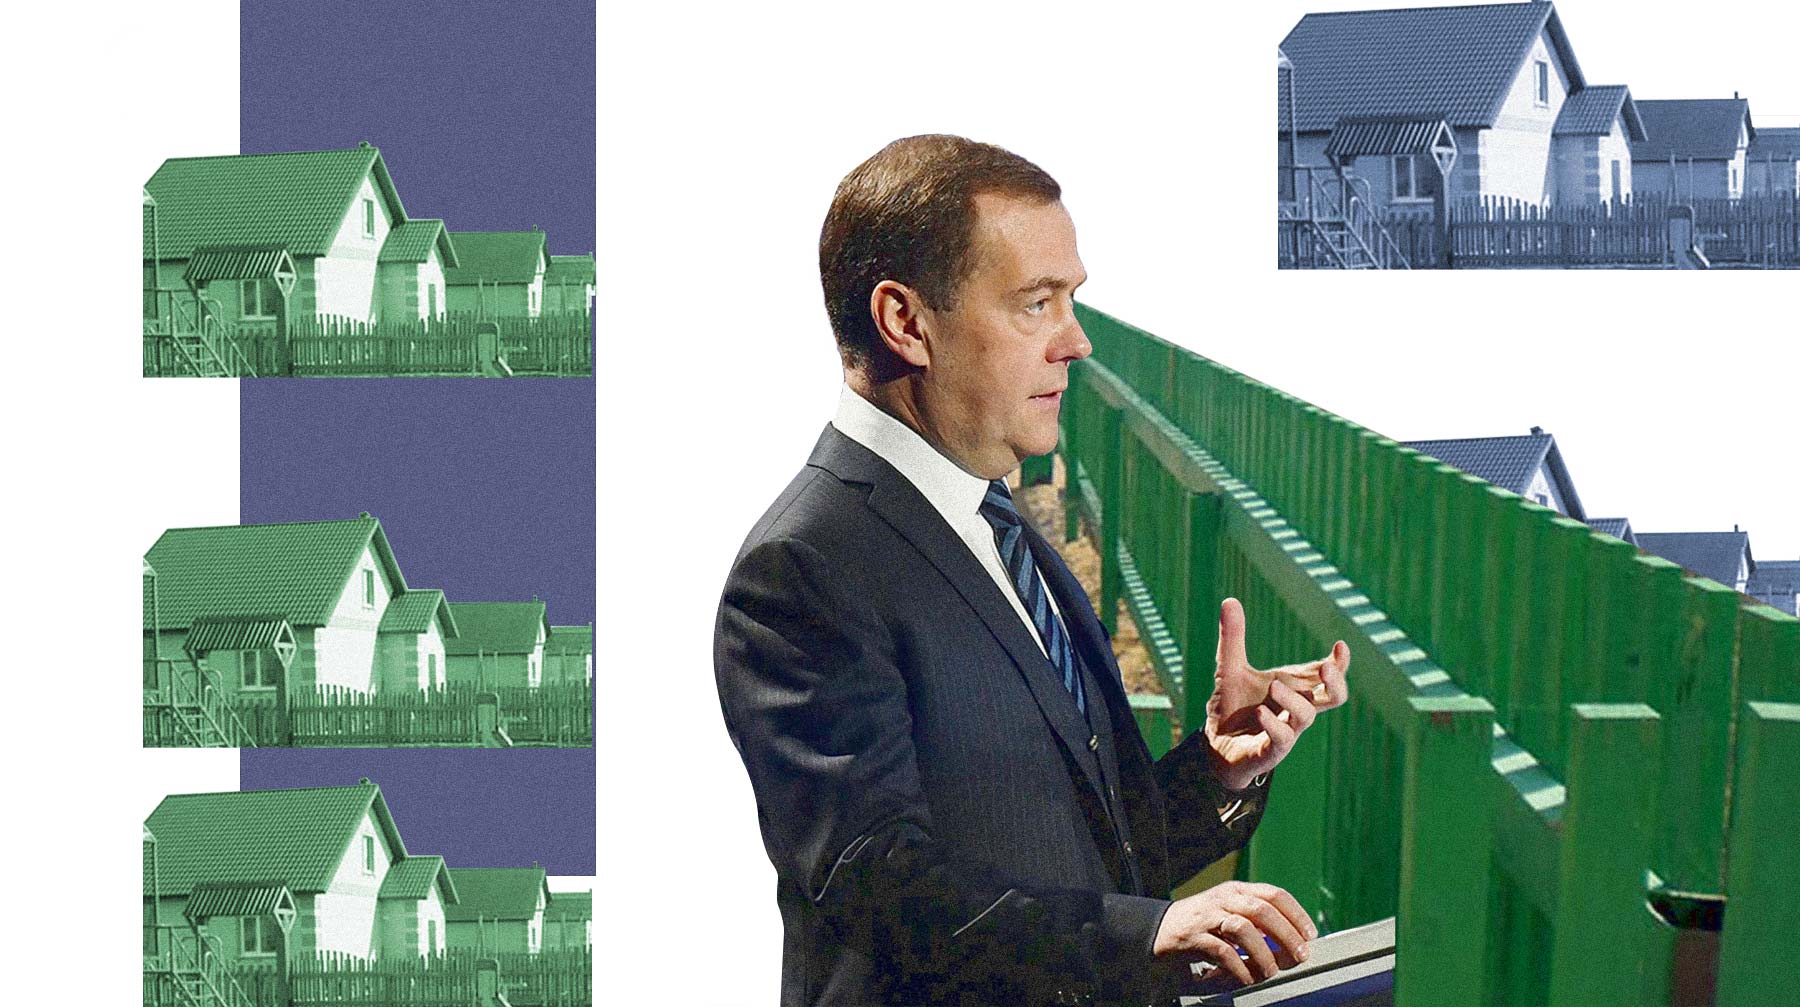 Ради государственных субсидий люди идут на махинации, фабрикации и взятки Председатель правительства РФ Дмитрий Медведев